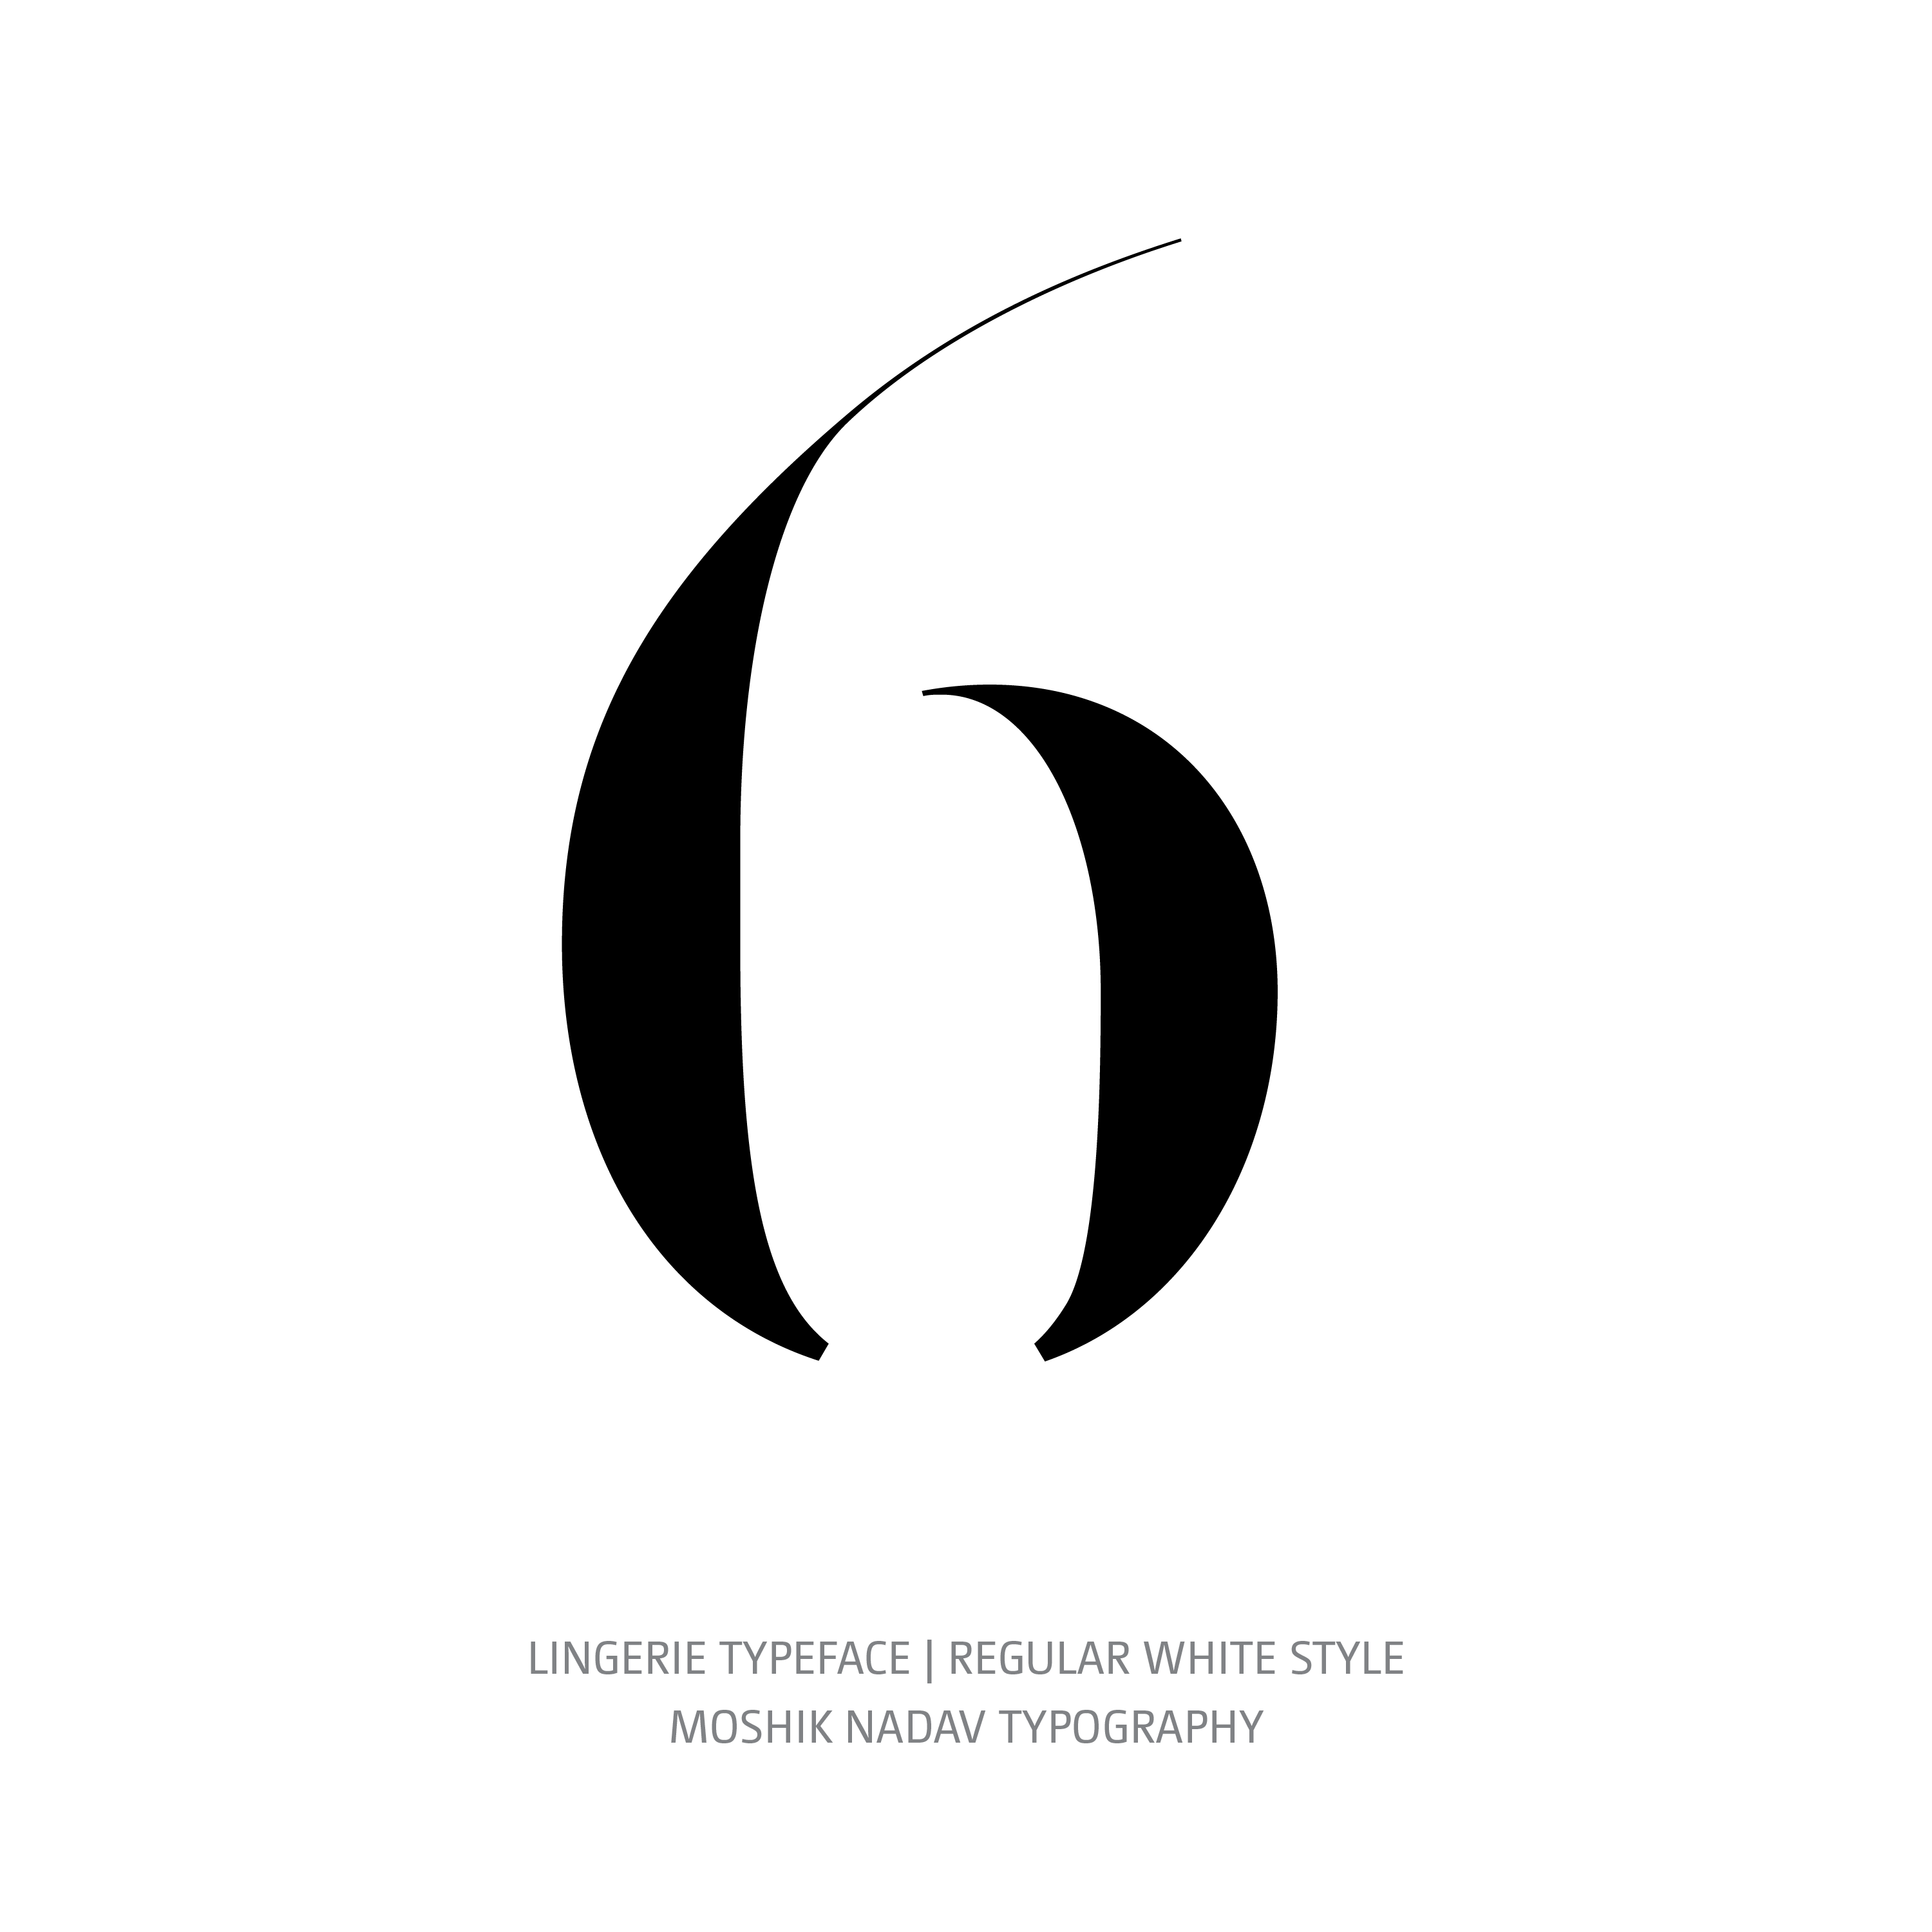 Lingerie Typeface Regular White 6